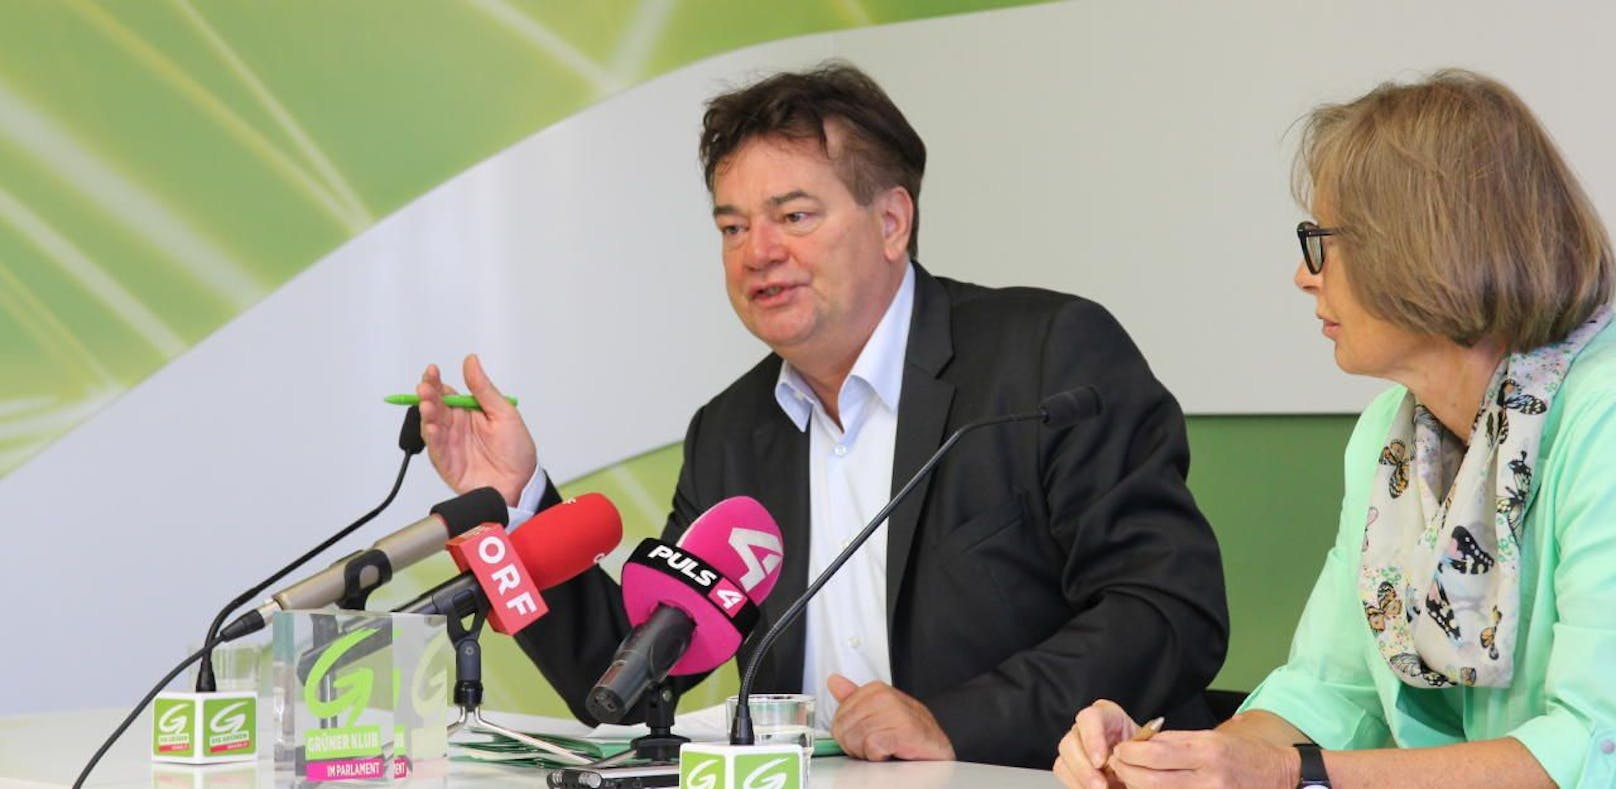 Werner Kogler und Gabriella Moser bei der Pressekonferenz der Grünen am 05.09.2017